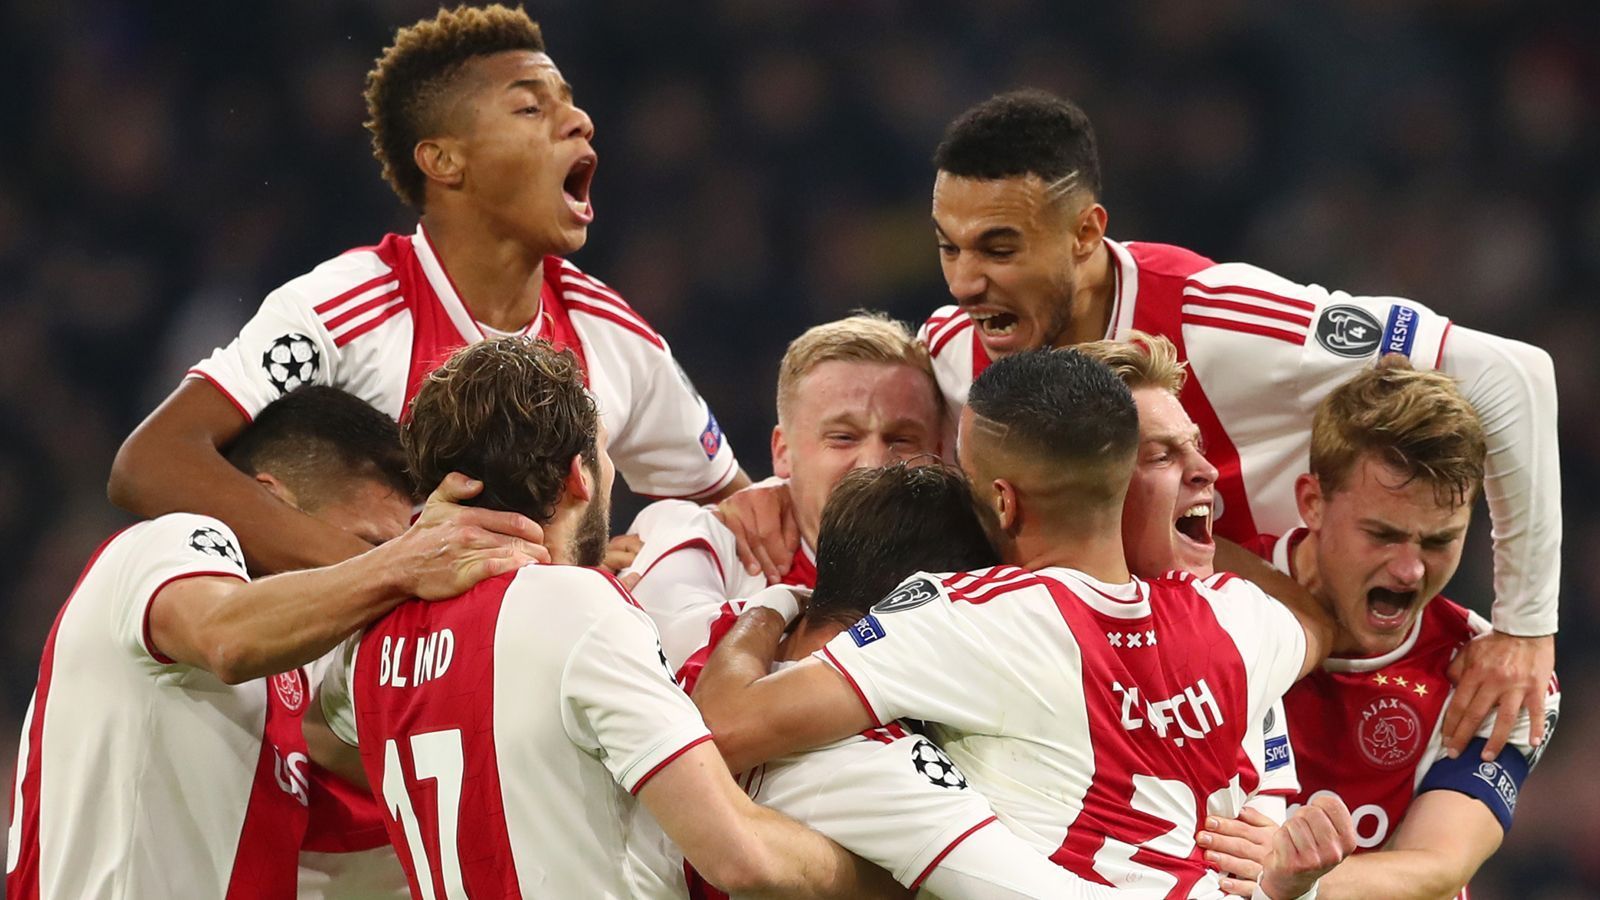 
                <strong>Platz 3:  Ajax Amsterdam</strong><br>
                Frenkie de Jong und Matthijs de Ligt sind trotz ihrer jungen Jahre bereits Führungsspieler im Team. De Jongs Wechsel nach Barcelona zur kommenden Saison ist bereits bestätigt. De Ligt wird wohl ebenfalls für viel Geld zu einem Topklub wechseln. Zahlreiche weitere Leistungsträger könnten den Verein im Sommer verlassen. Vielleicht ein besonderer Anreiz für das Team - in dieser Besetzung wird diese Mannschaft wohl nie wieder zusammenspielen. In der Liga hat Ajax die vergangenen sechs Spiele für sich entschieden. Was gegen die niederländischen Youngster spricht, ist ihre fehlende Erfahrung. Für Teams wie Barcelona oder Liverpool sind K.o.-Spiele in der Champions League fast schon Routine - so abgezockt sind die Ajax-Talente noch nicht.  
              